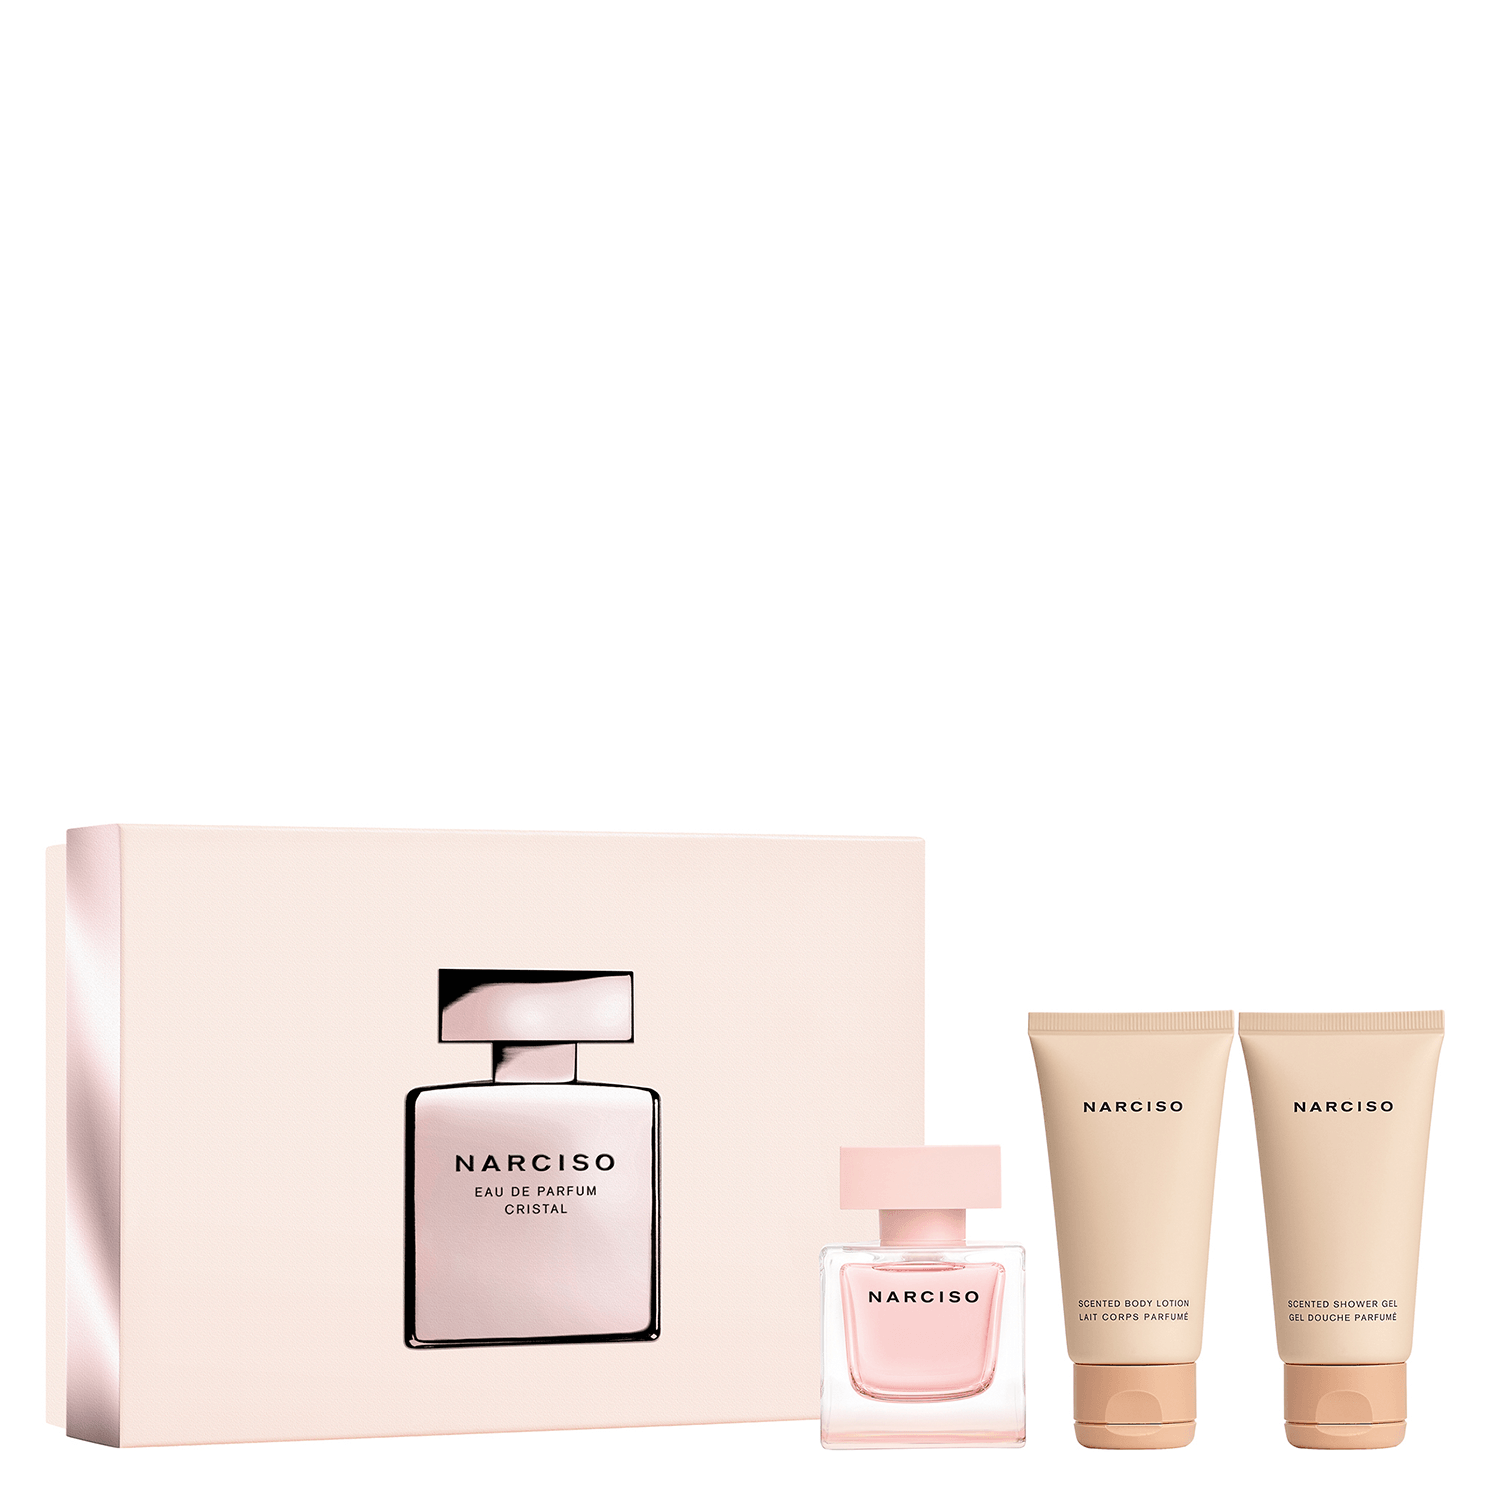 Produktbild von Narciso - Cristal Eau de Parfum Kit